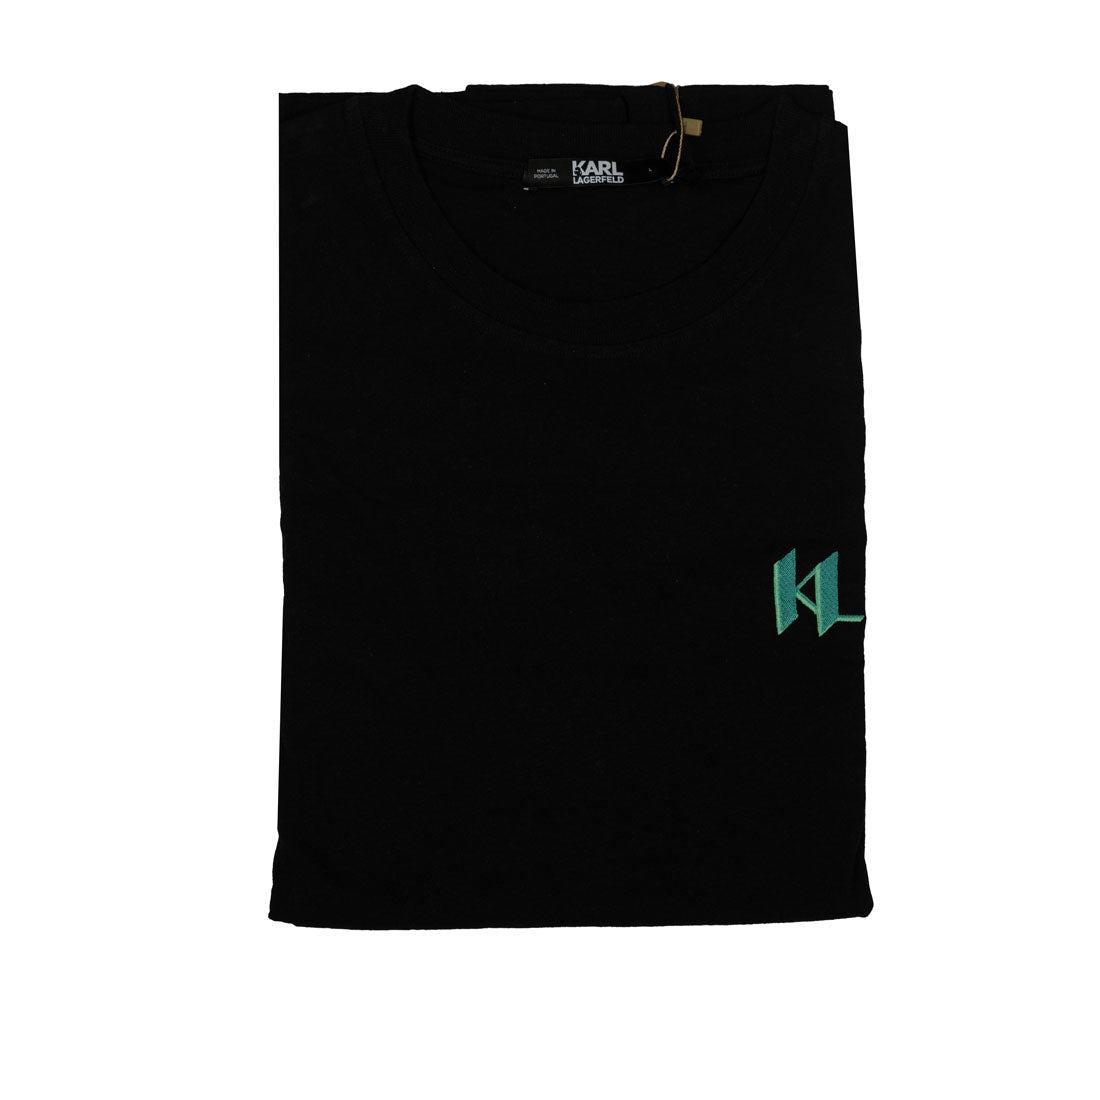 Karl Lagerfeld Kl Monogram Linen-blend Brand New T-shirt Man - mymadstore.com